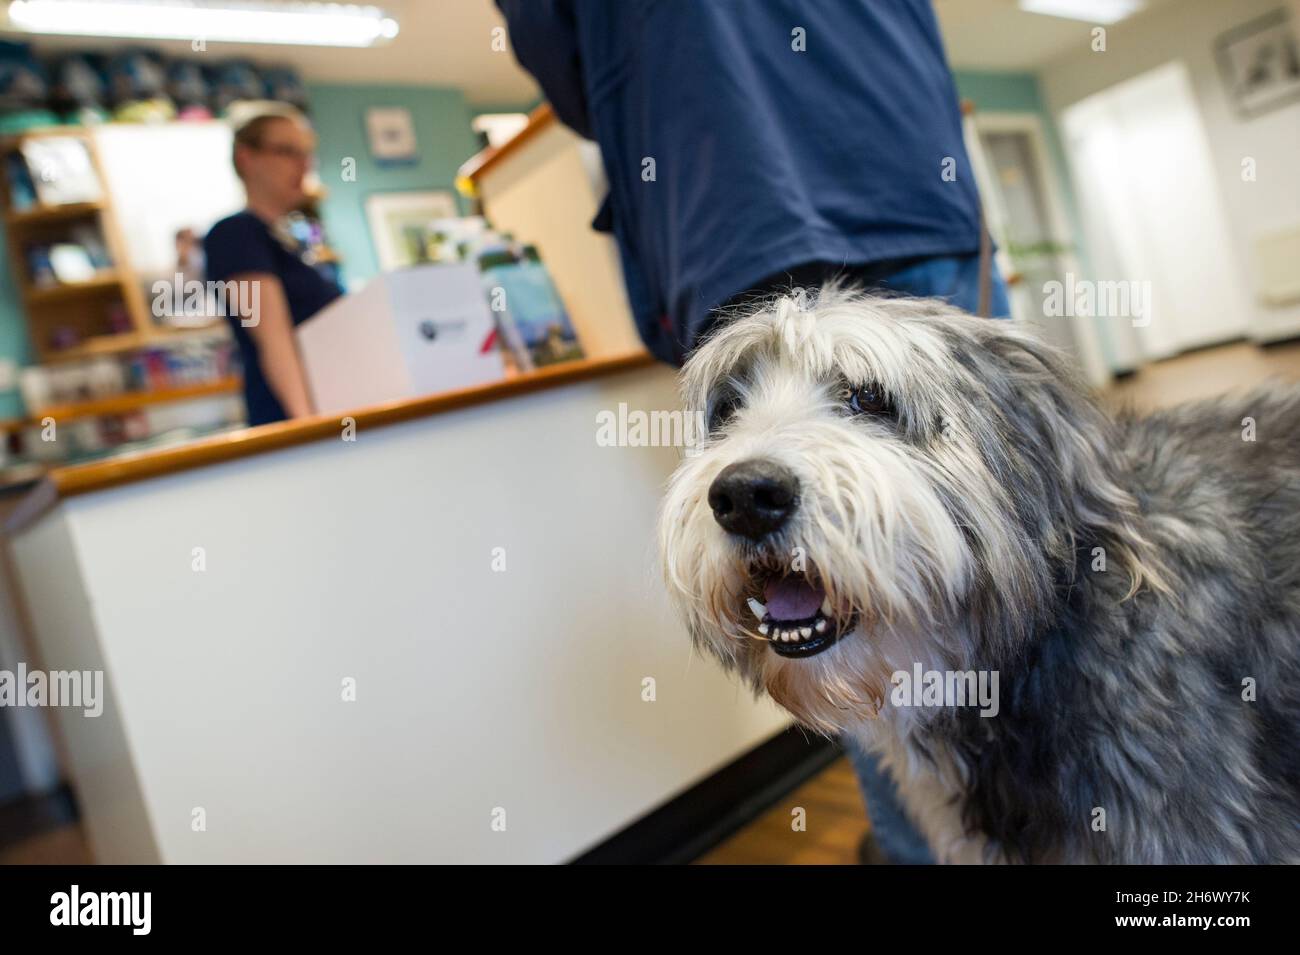 Un chien de compagnie attendant à la réception d'une chirurgie vétérinaire, Nottingham, Angleterre, Royaume-Uni. Banque D'Images